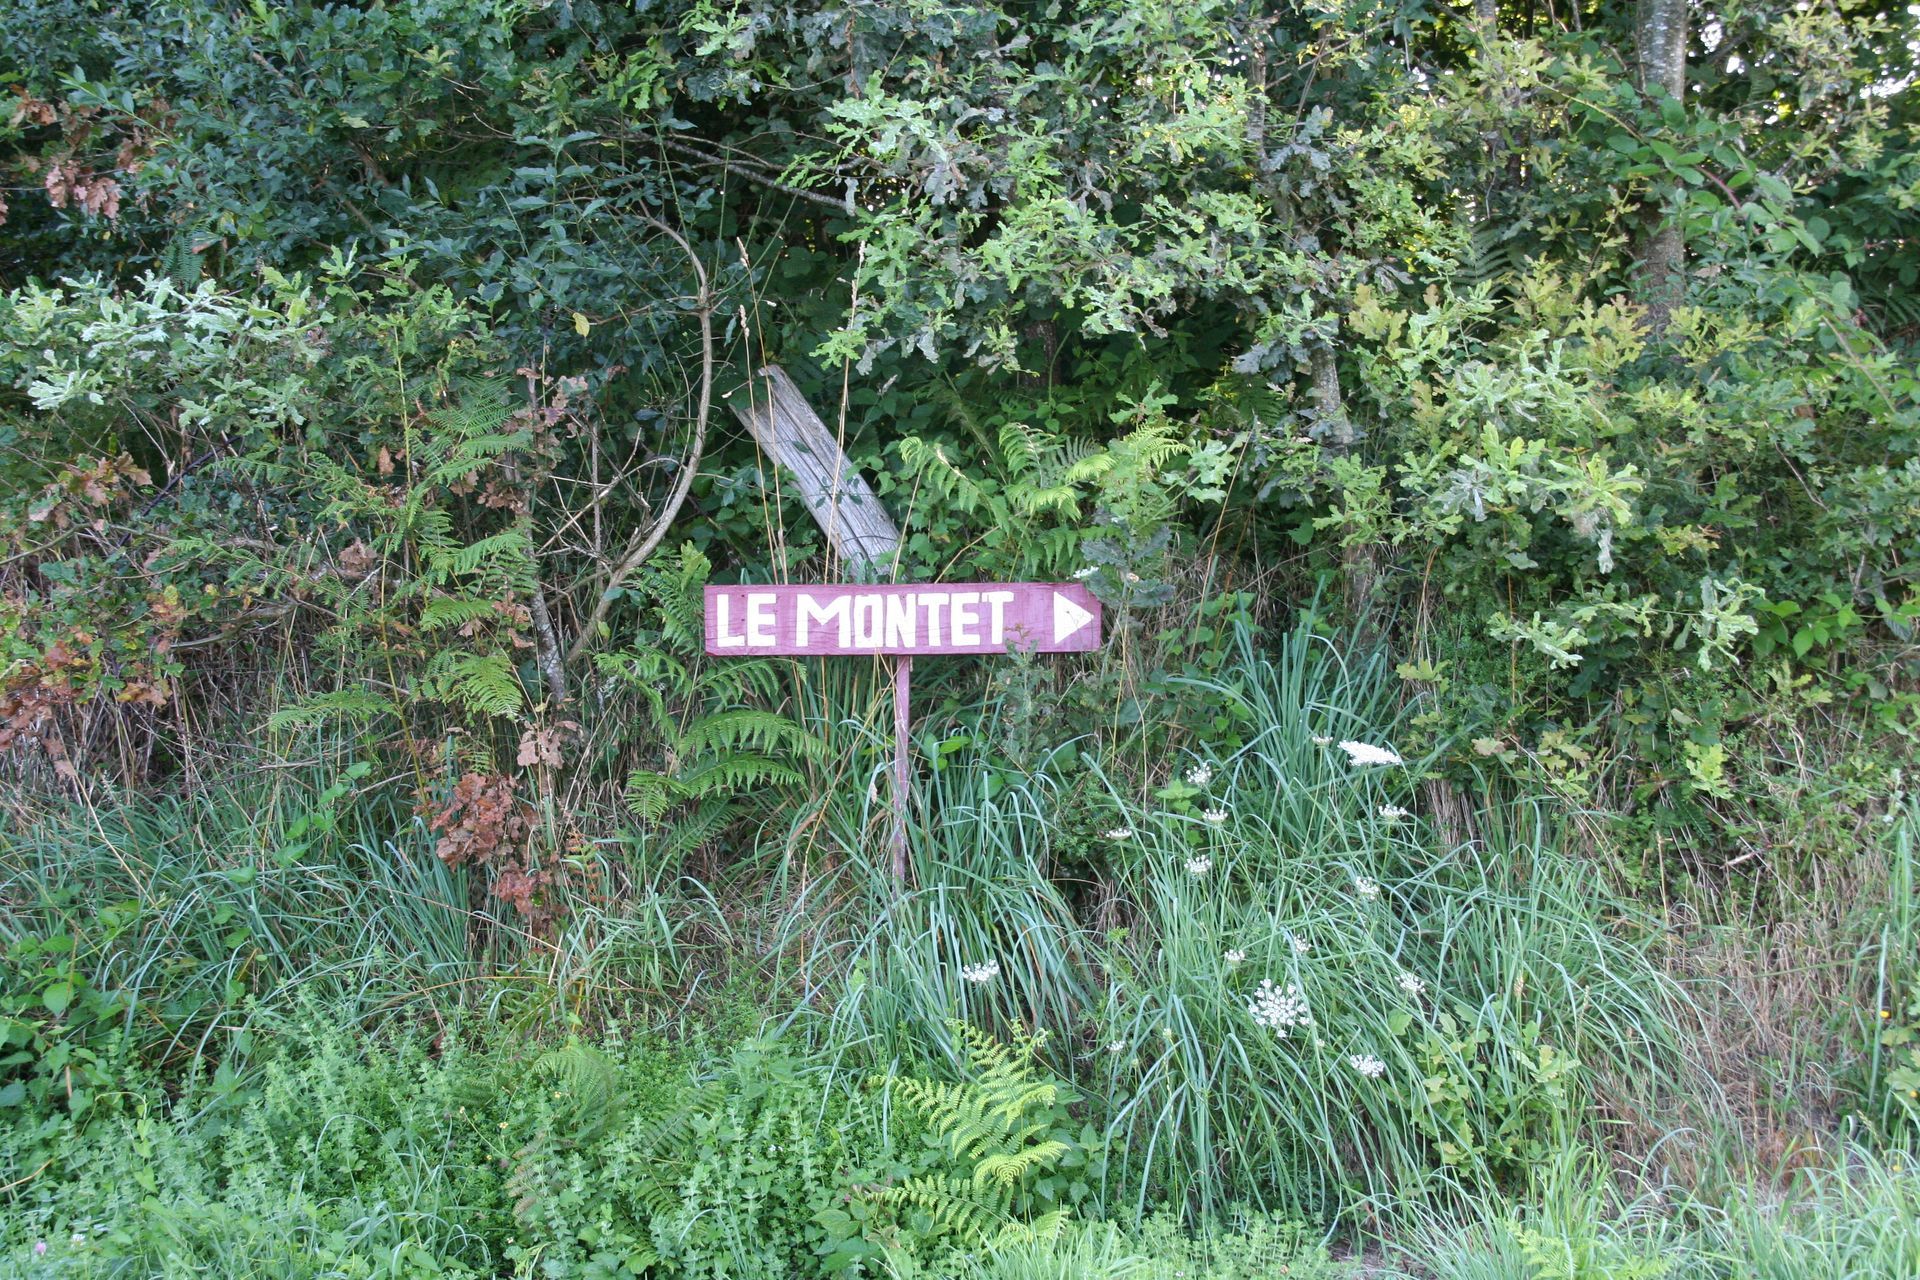 naar Le Montet, route naar vakantiehoeve le montet